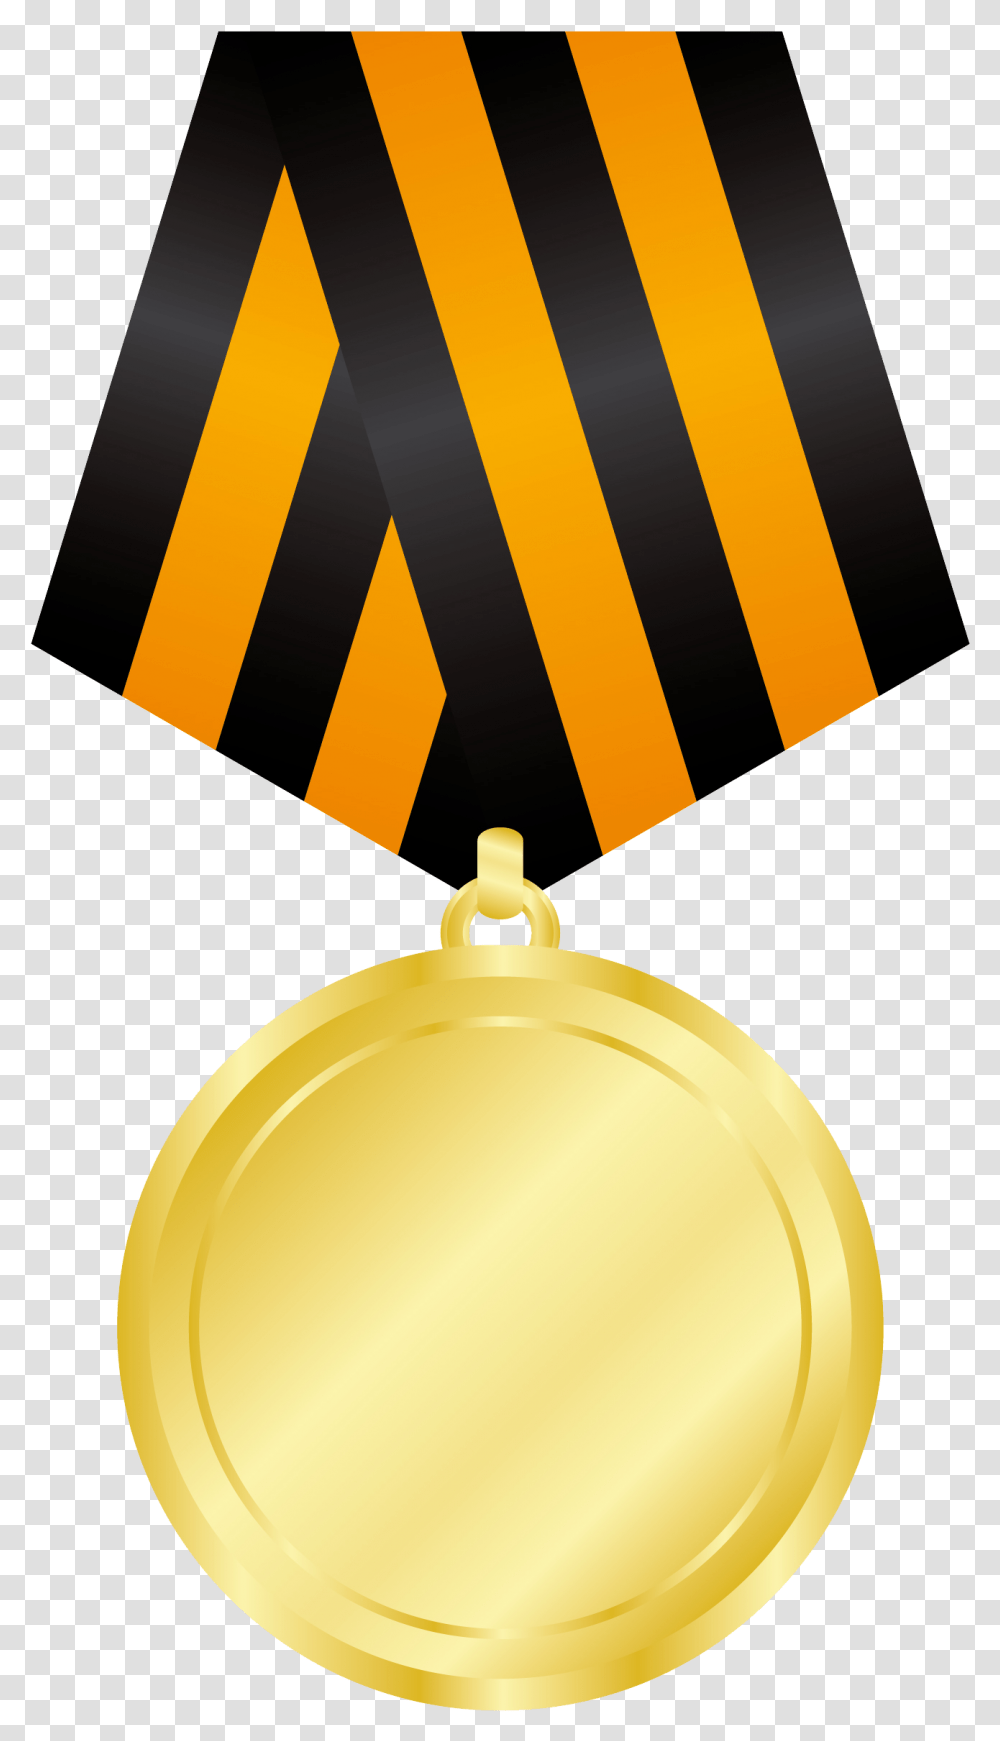 Gold Medal Images Star Vector, Trophy, Lamp Transparent Png